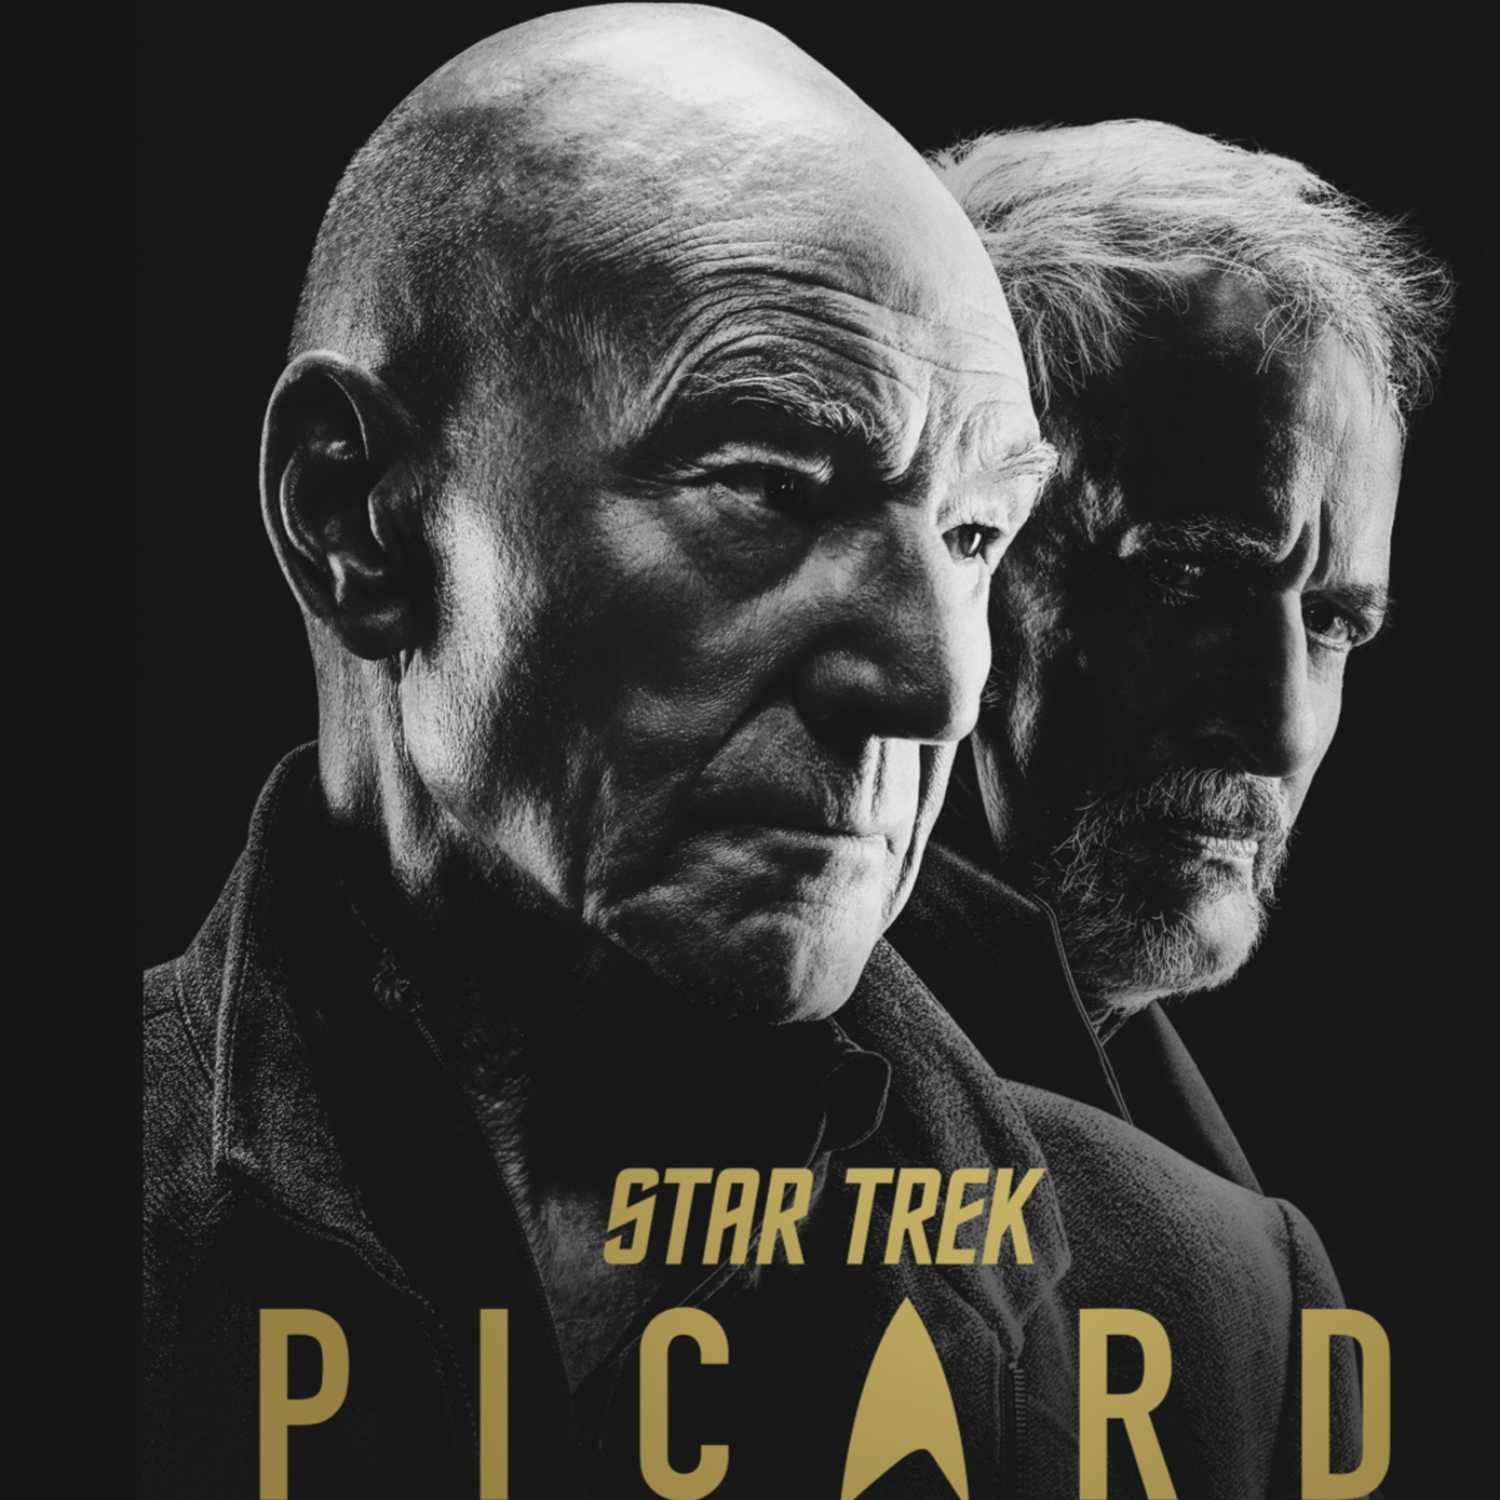 Bonus Episode: Star Trek Picard S2E6